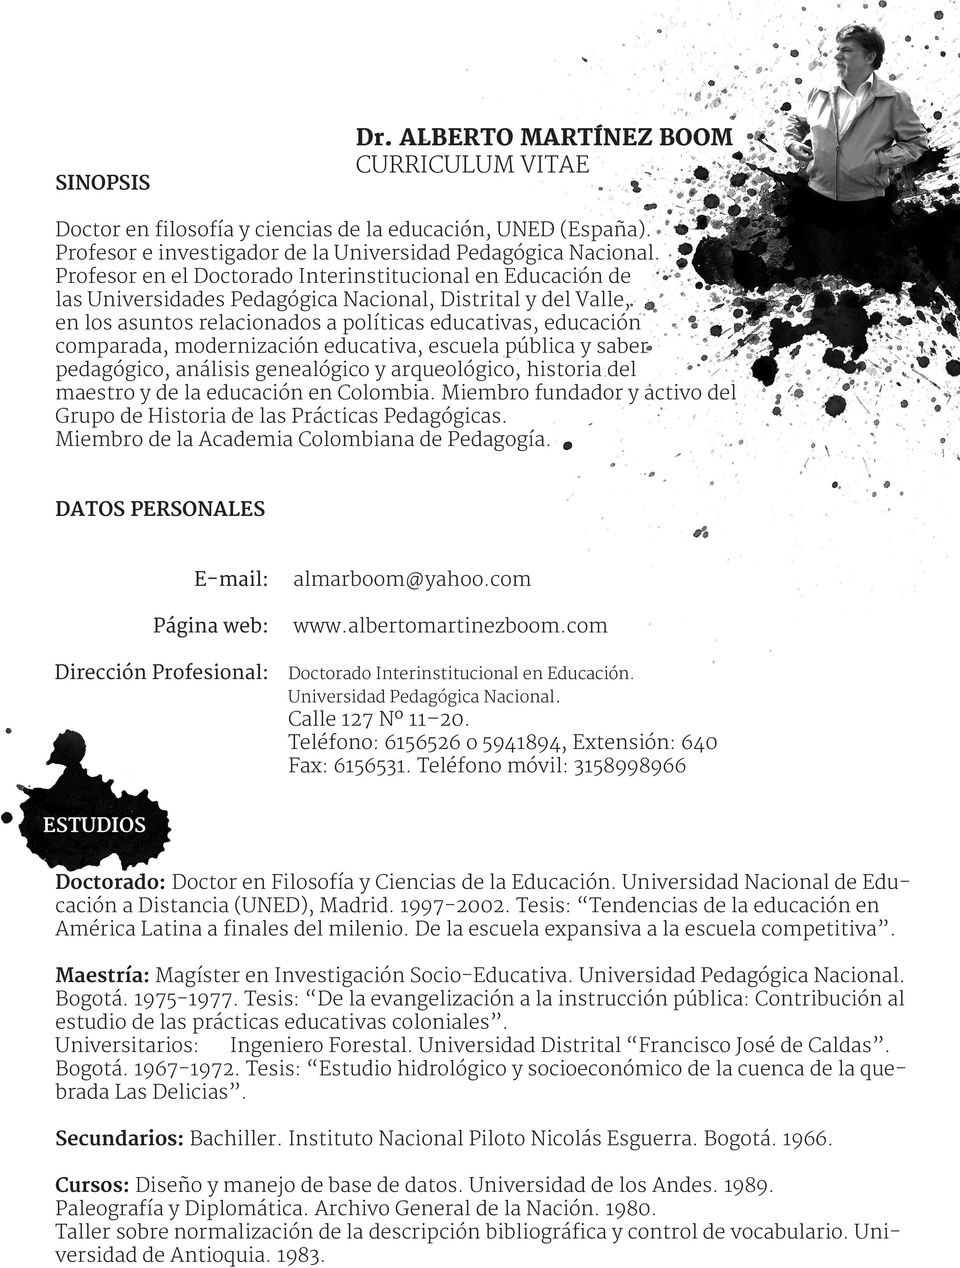 modernización educativa, escuela pública y saber pedagógico, análisis genealógico y arqueológico, historia del maestro y de la educación en Colombia.